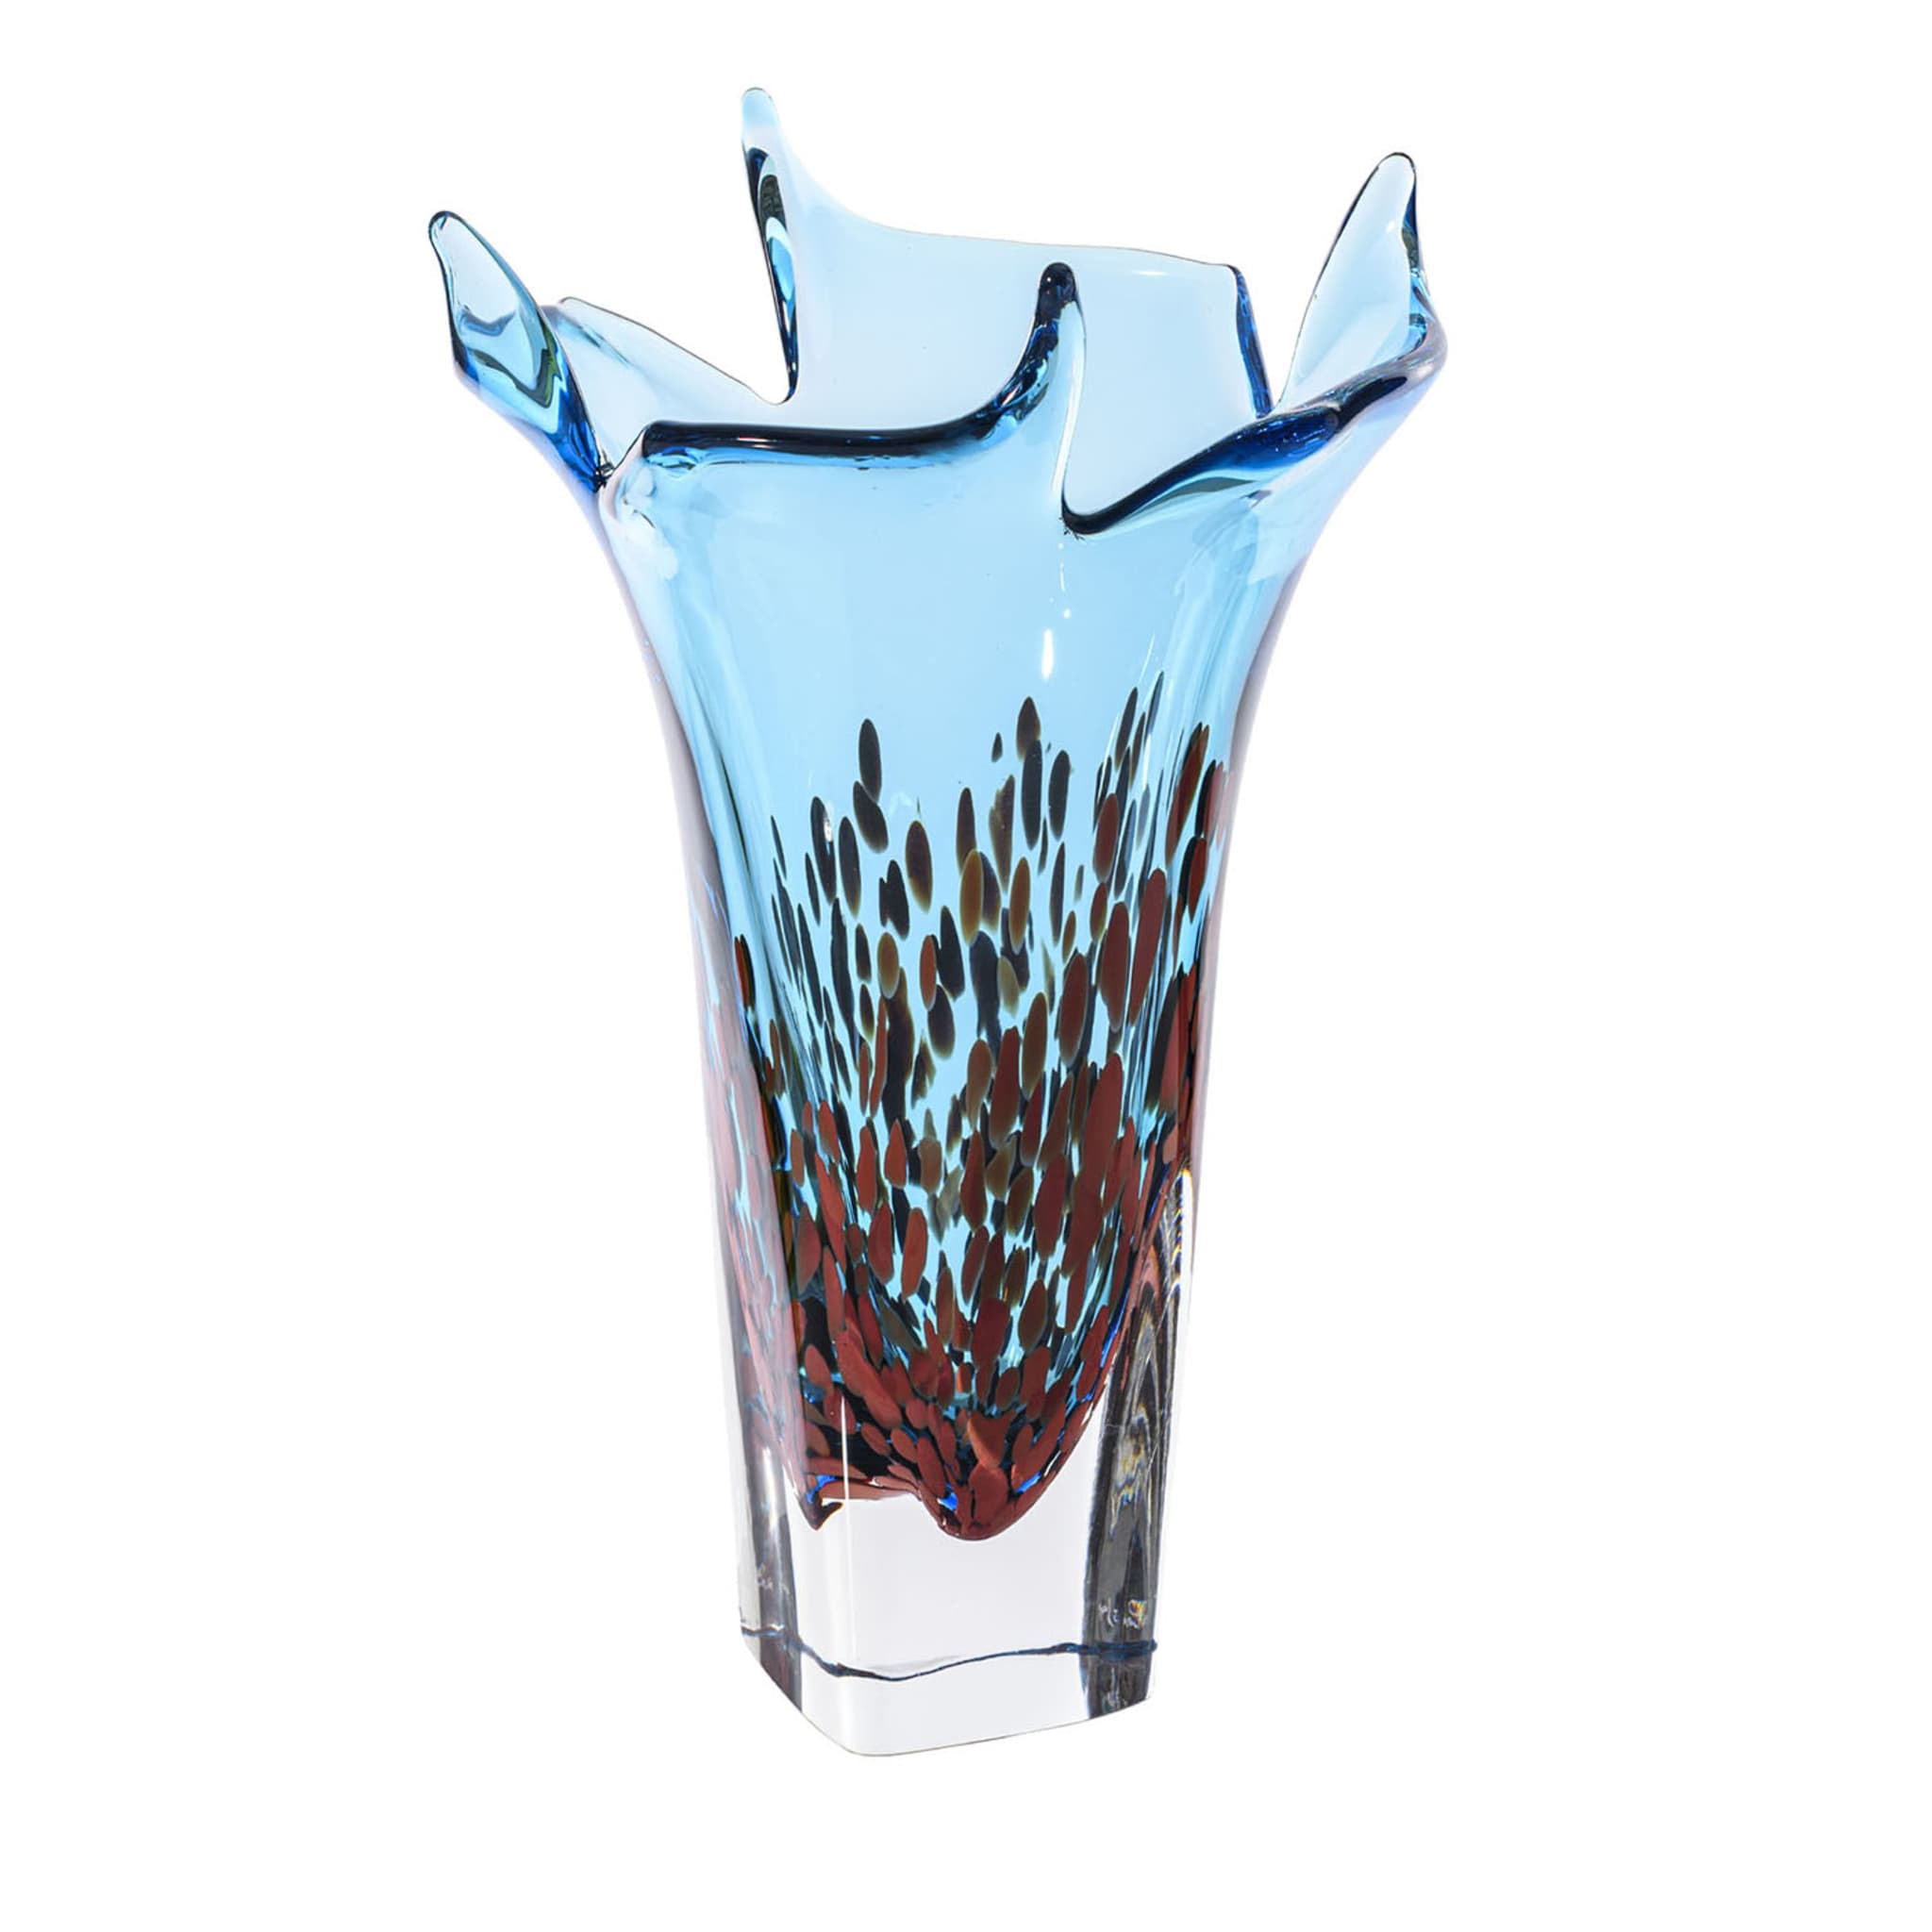 Grand vase en verre bleu clair Bloom - Vue principale